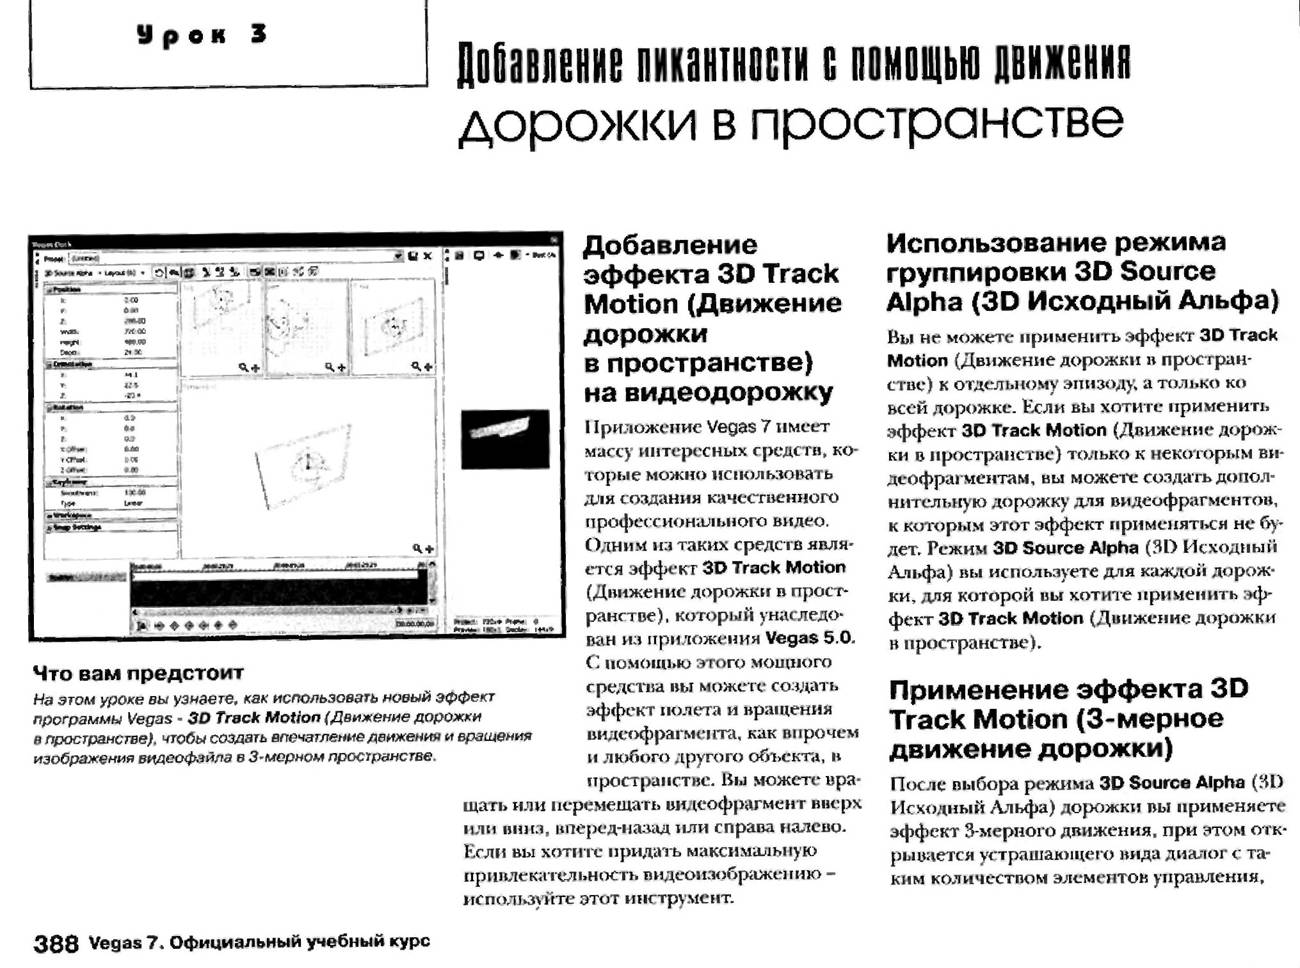 http://redaktori-uroki.3dn.ru/_ph/12/267117146.jpg